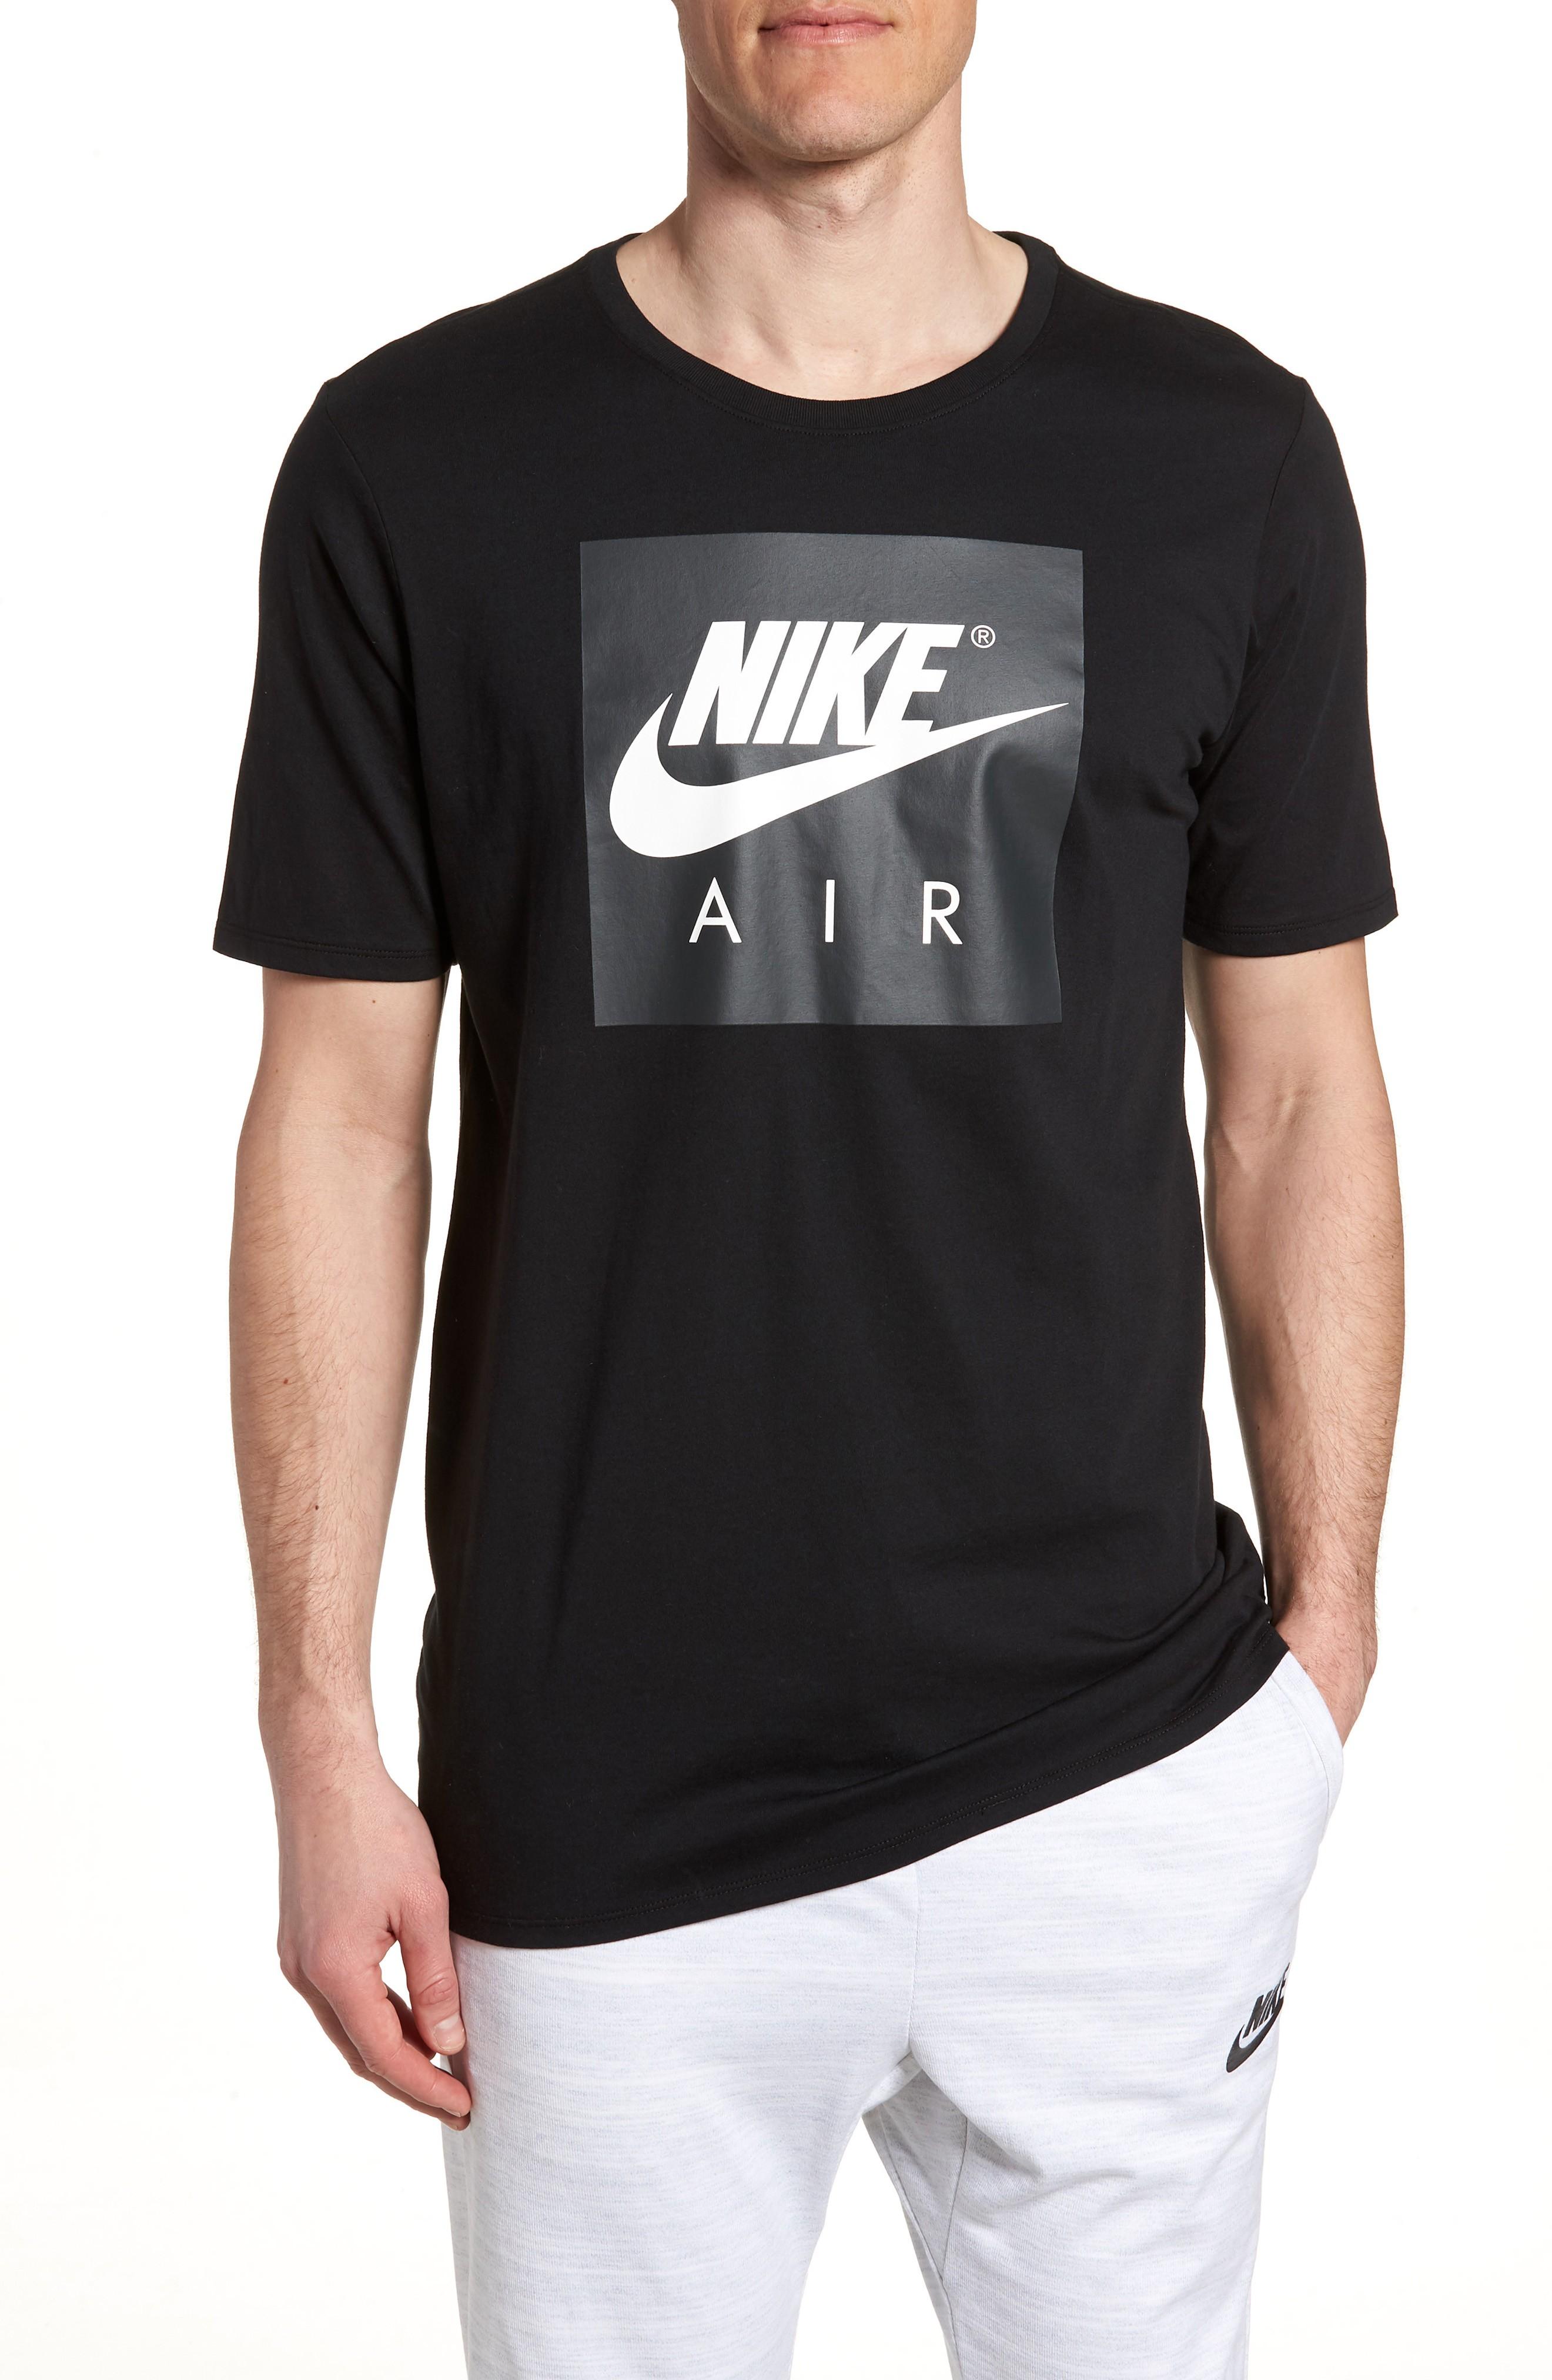 nike air graphic t shirt